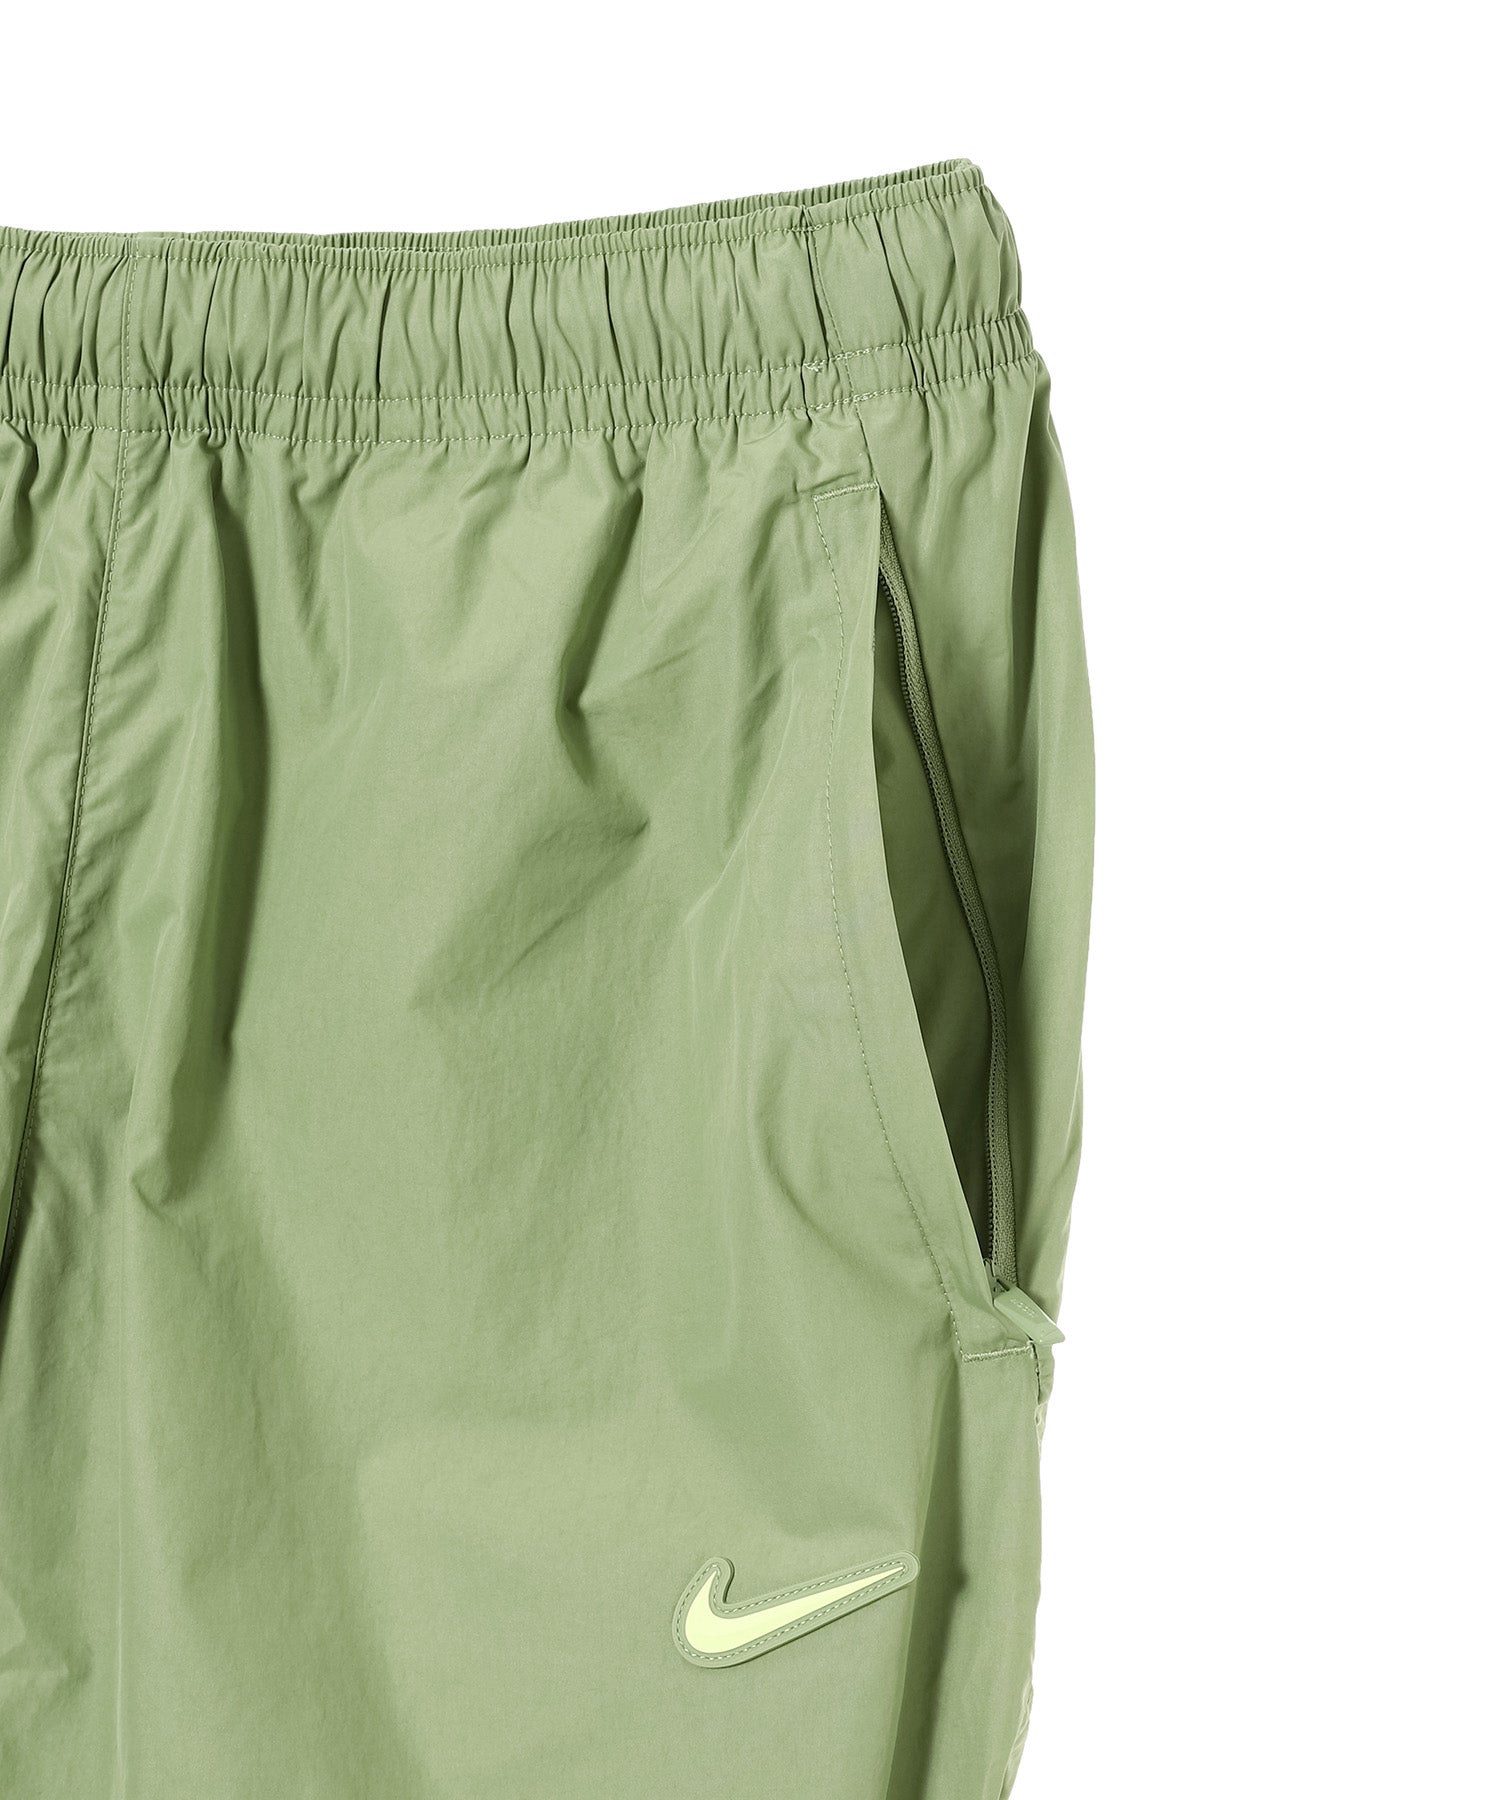 Nike Nrg Cs Woven Track Pants